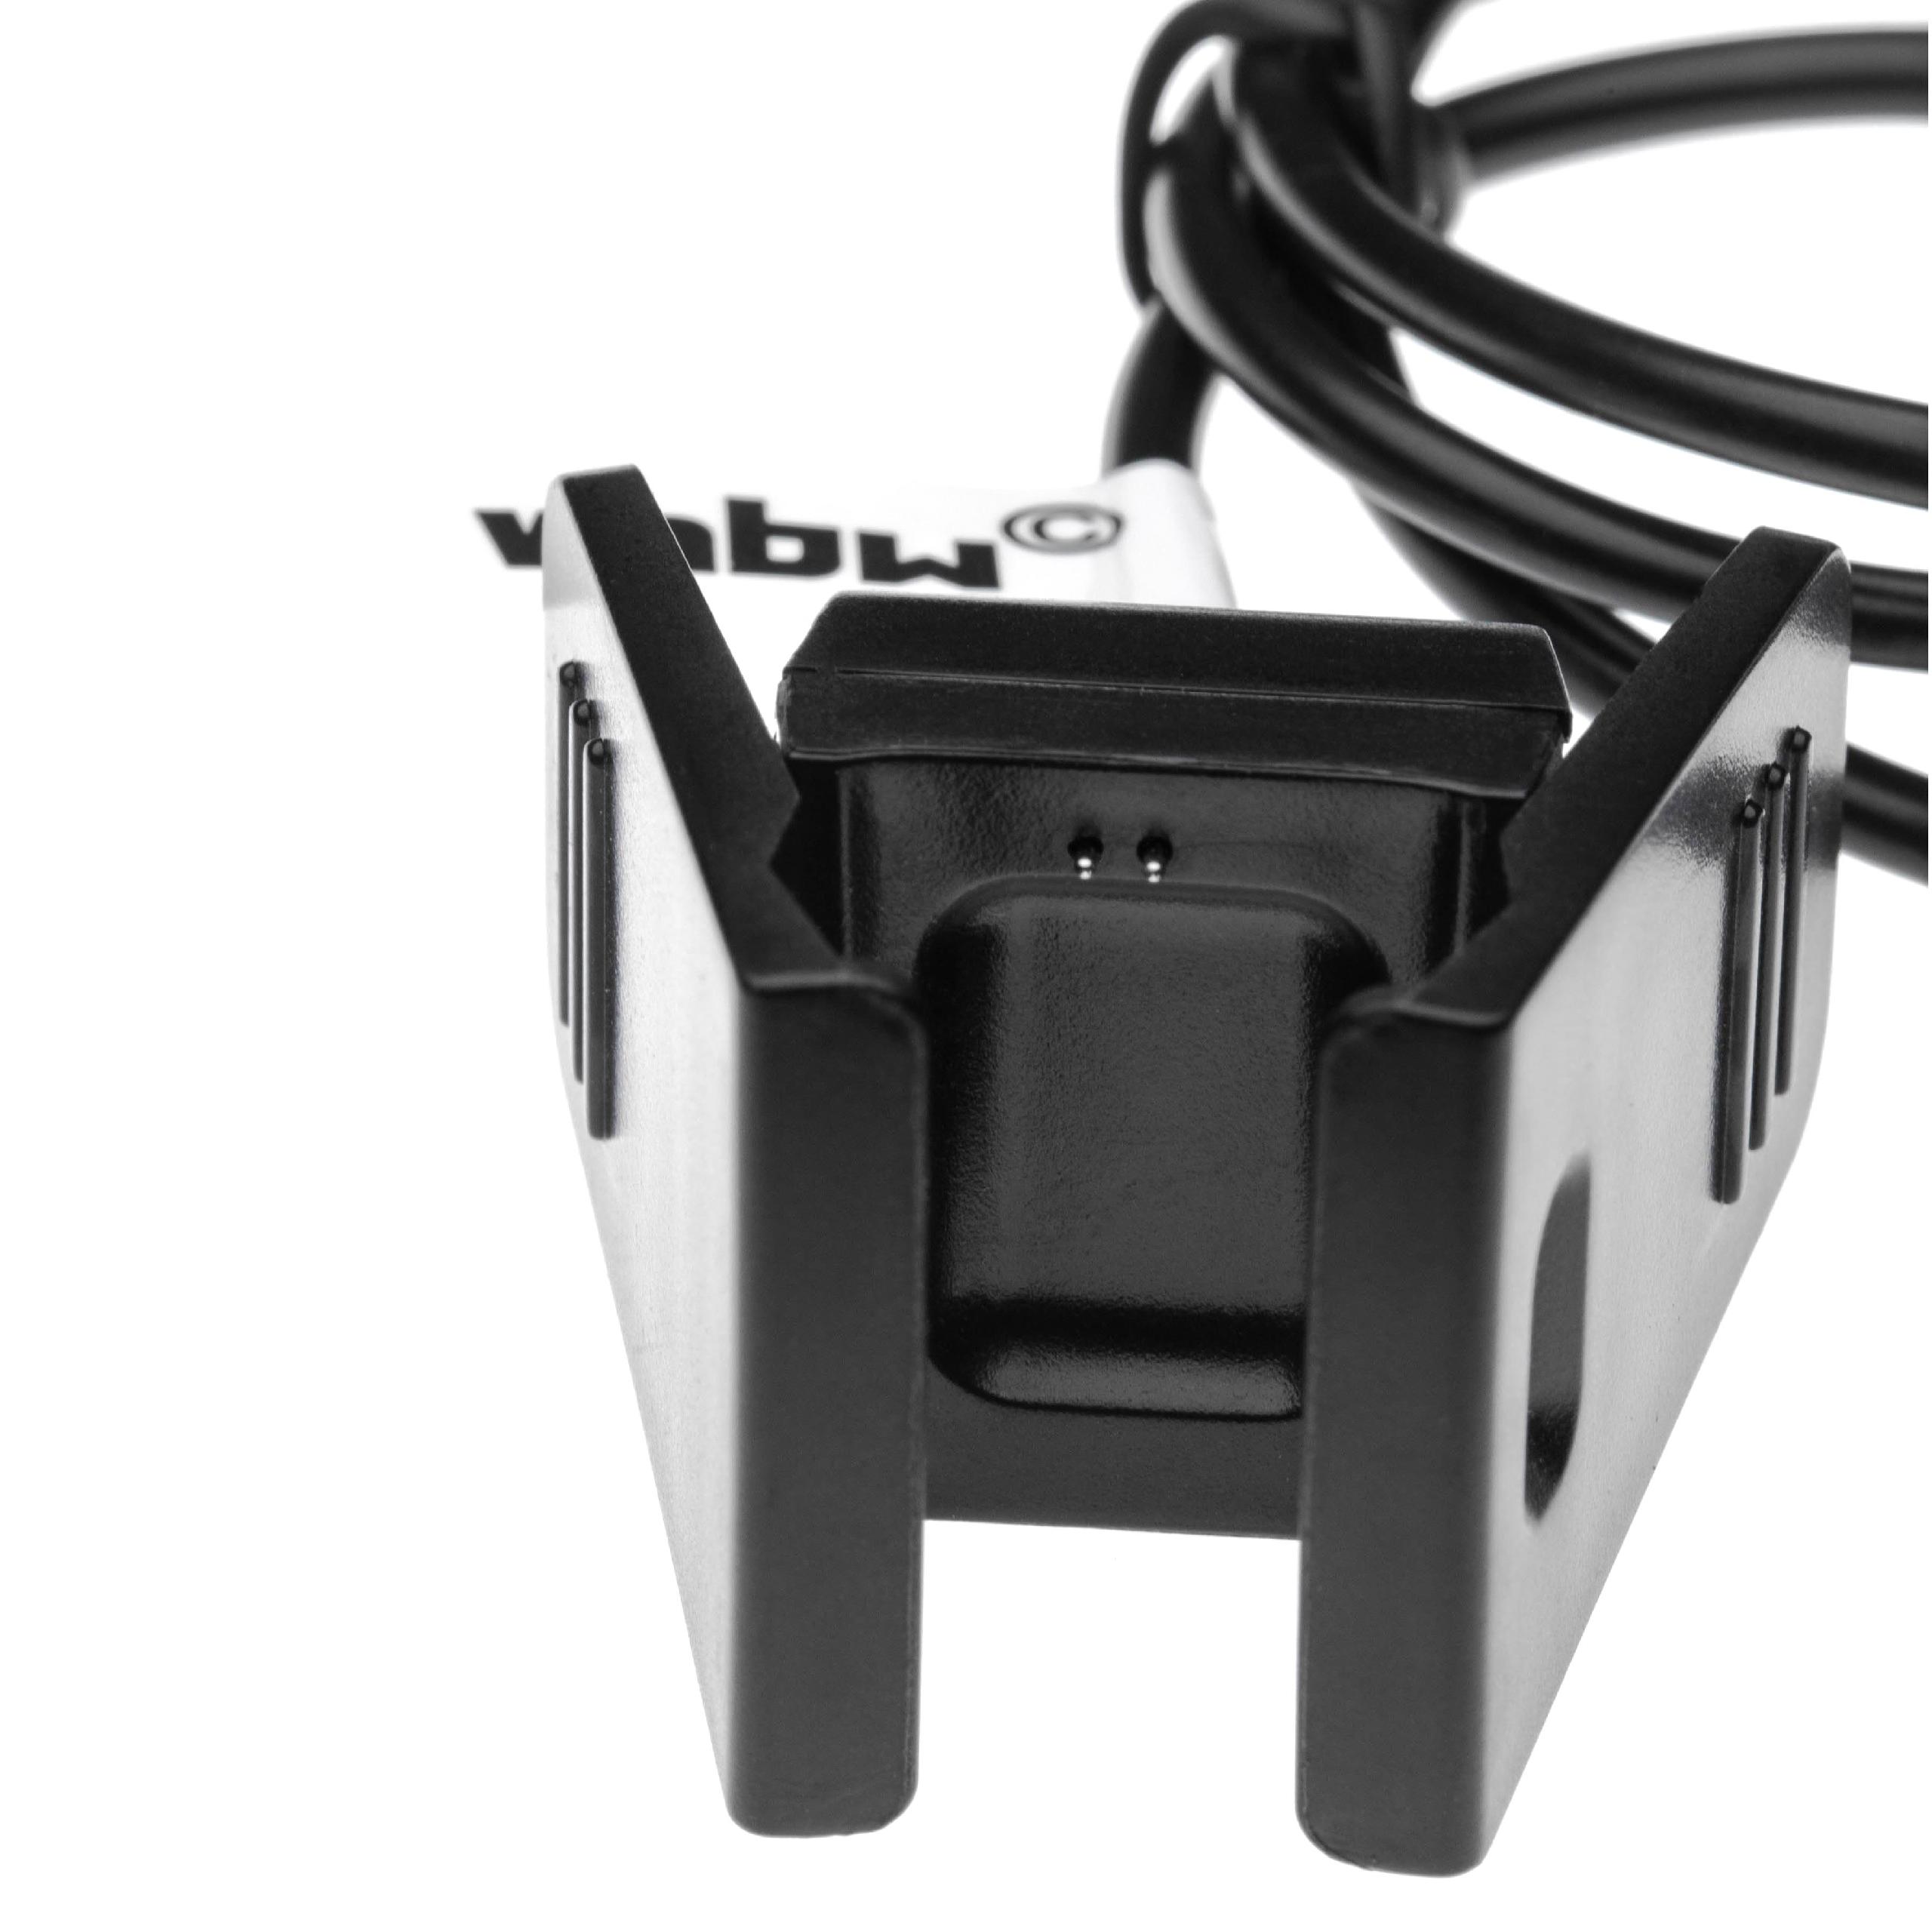 Cable de carga USB para smartwatch Fitbit Charge 2 - negro 50 cm